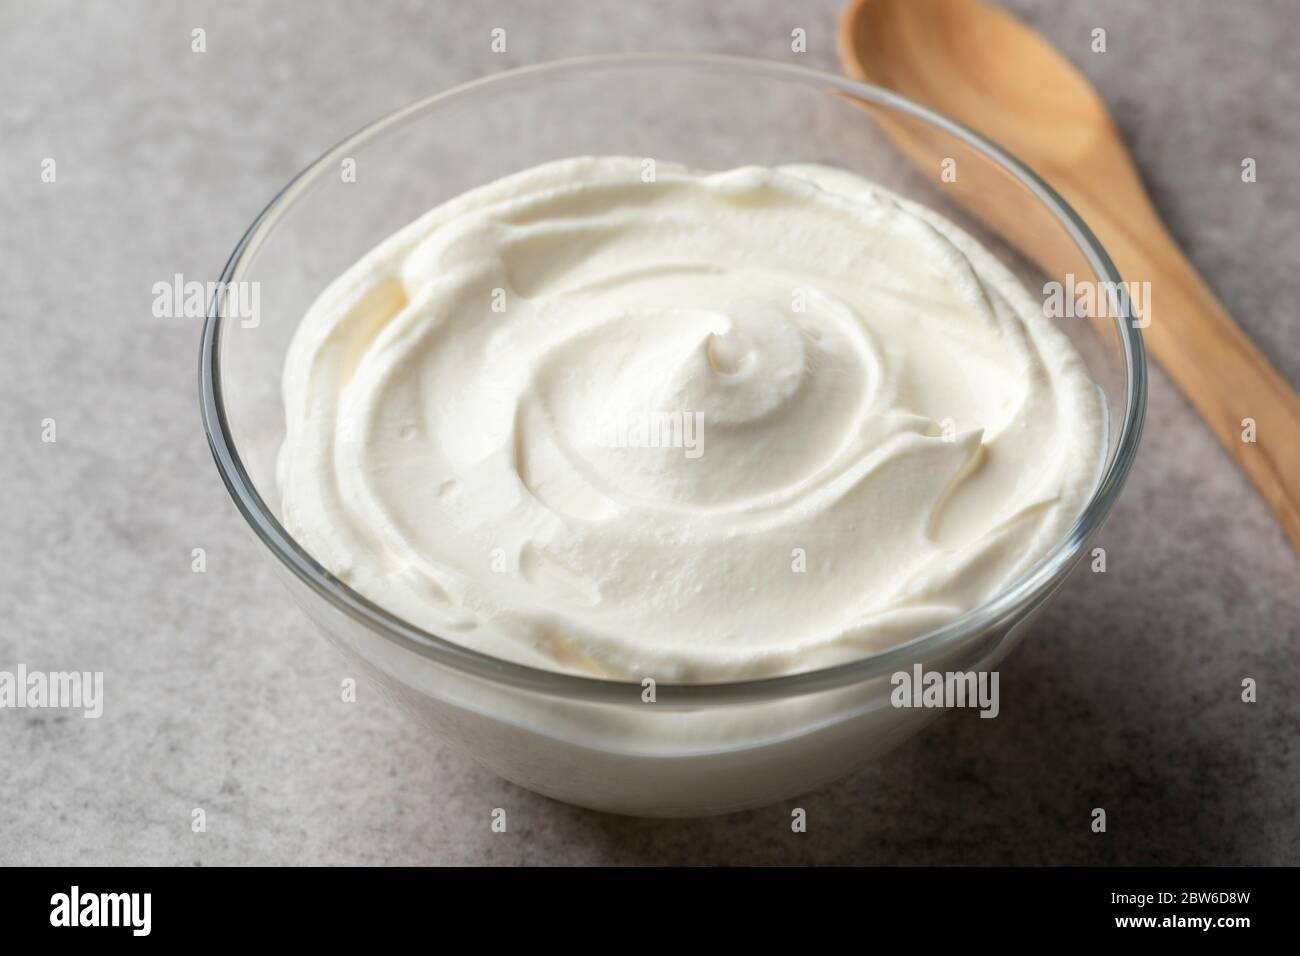 Crema fraiche lisa fresca en un tazón como ingrediente Foto de stock